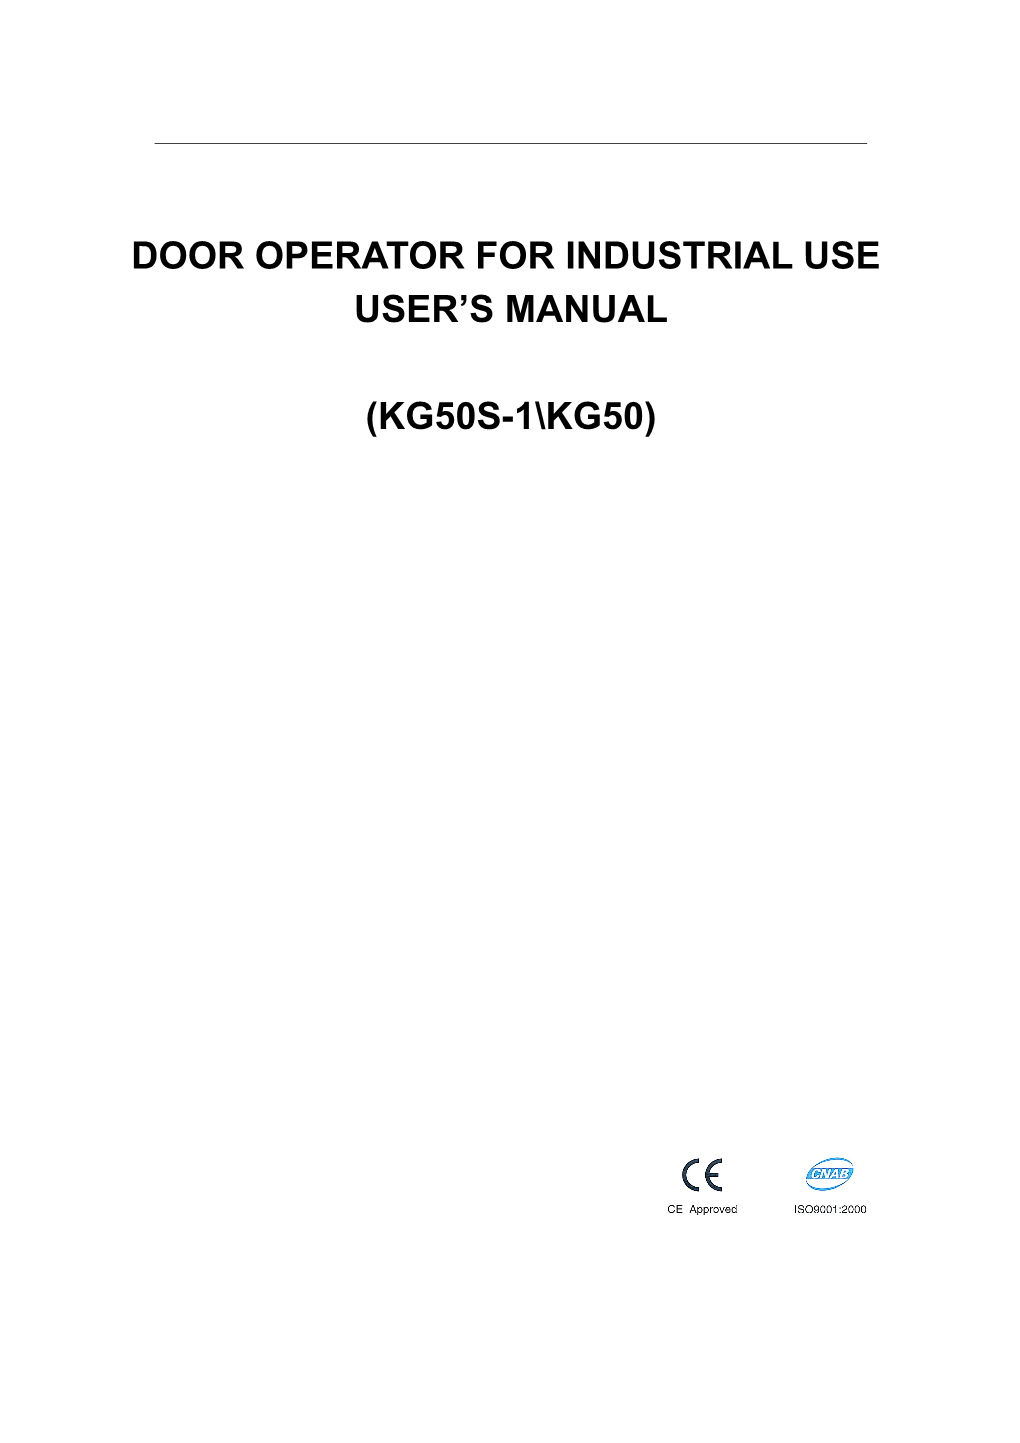 KG50 Series Industrial Rolling Door Operator